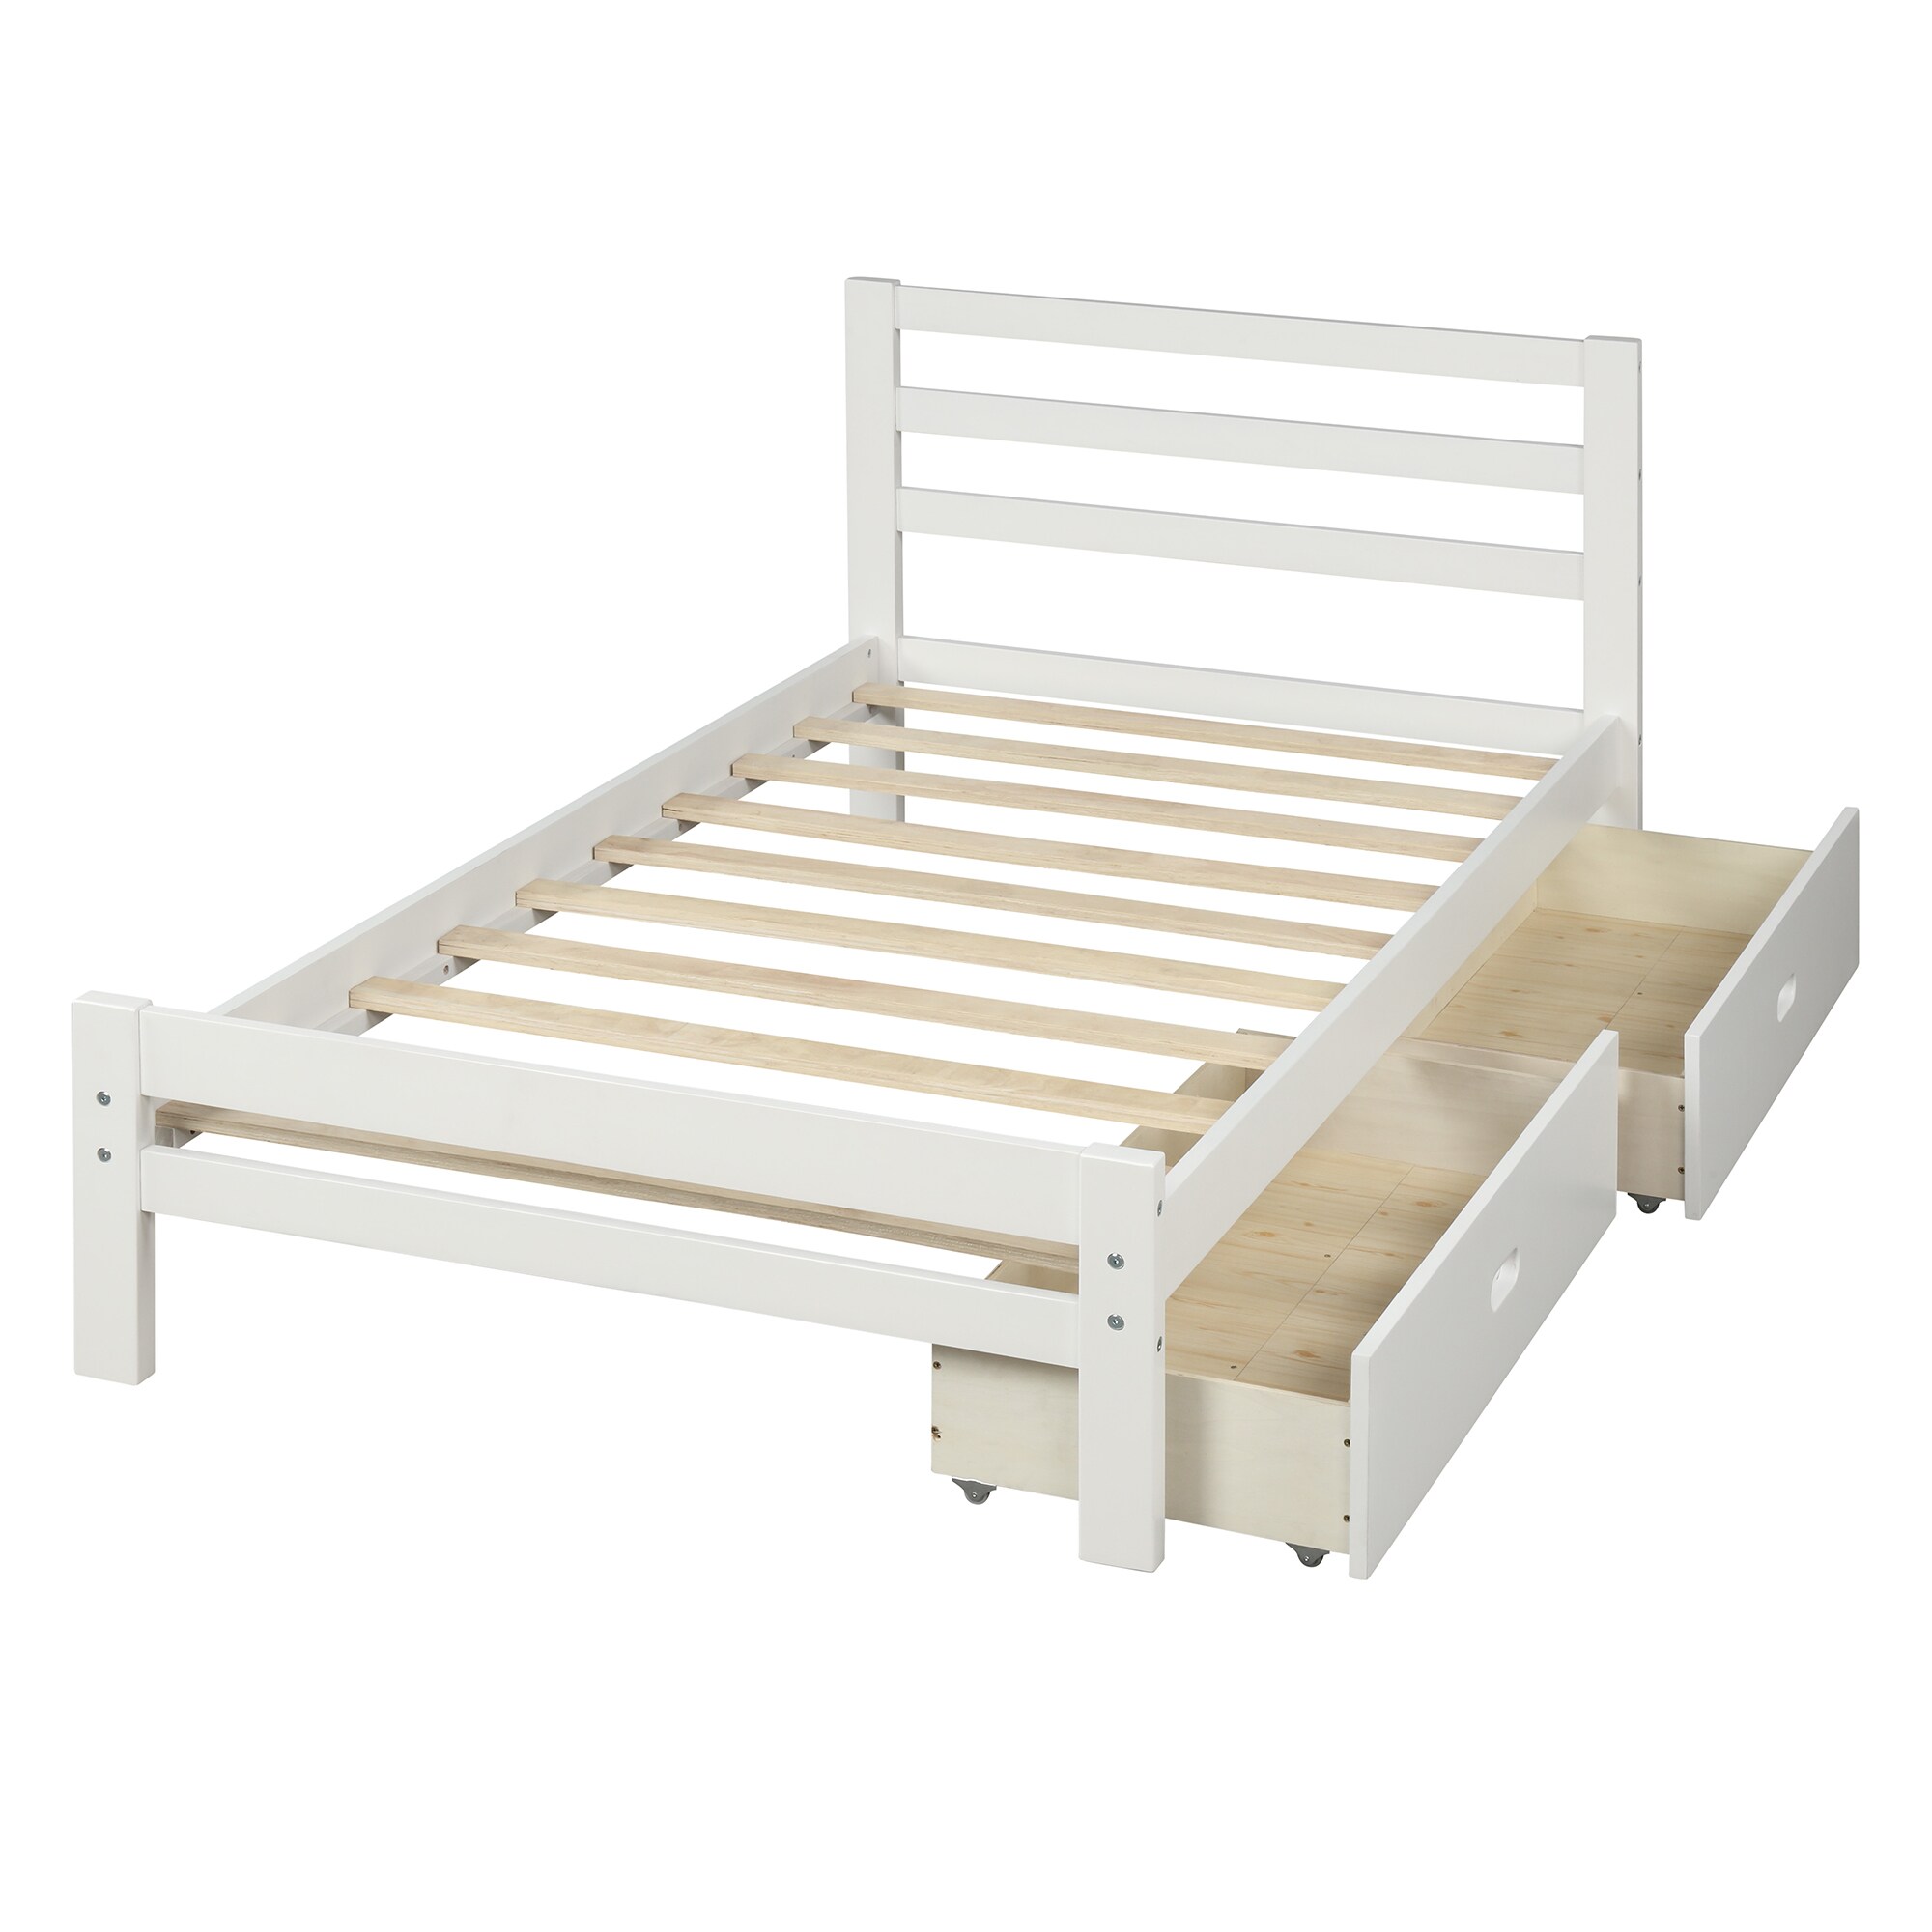 Wood platform bed Bedroom Furniture at Lowes.com